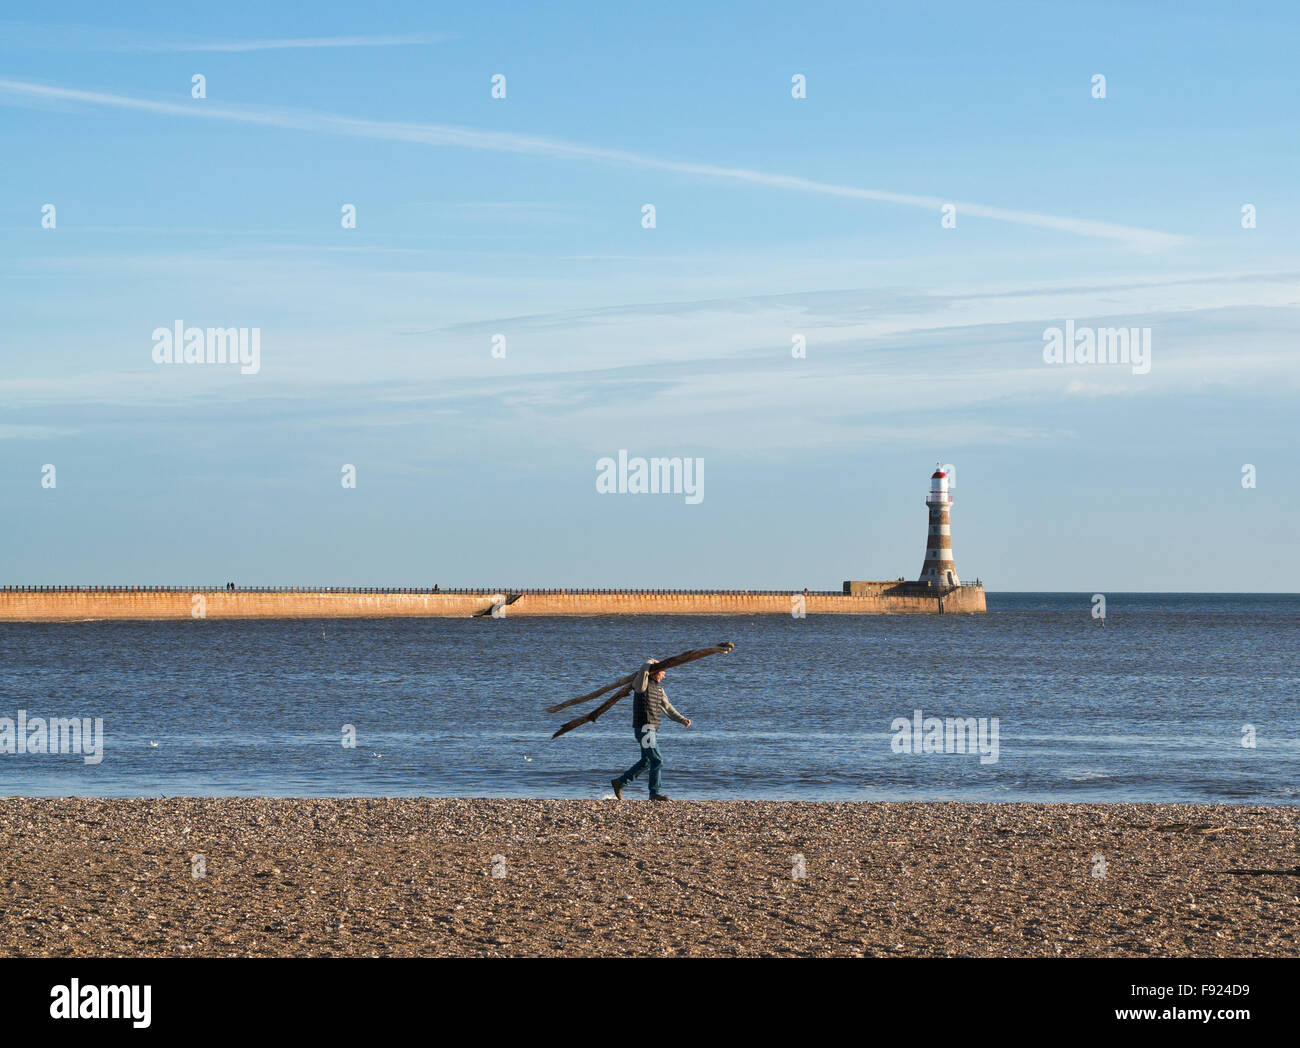 Homme portant du bois flotté le long de la plage avec le nord Roker pier et le phare derrière, Sunderland, Angleterre, RU Banque D'Images